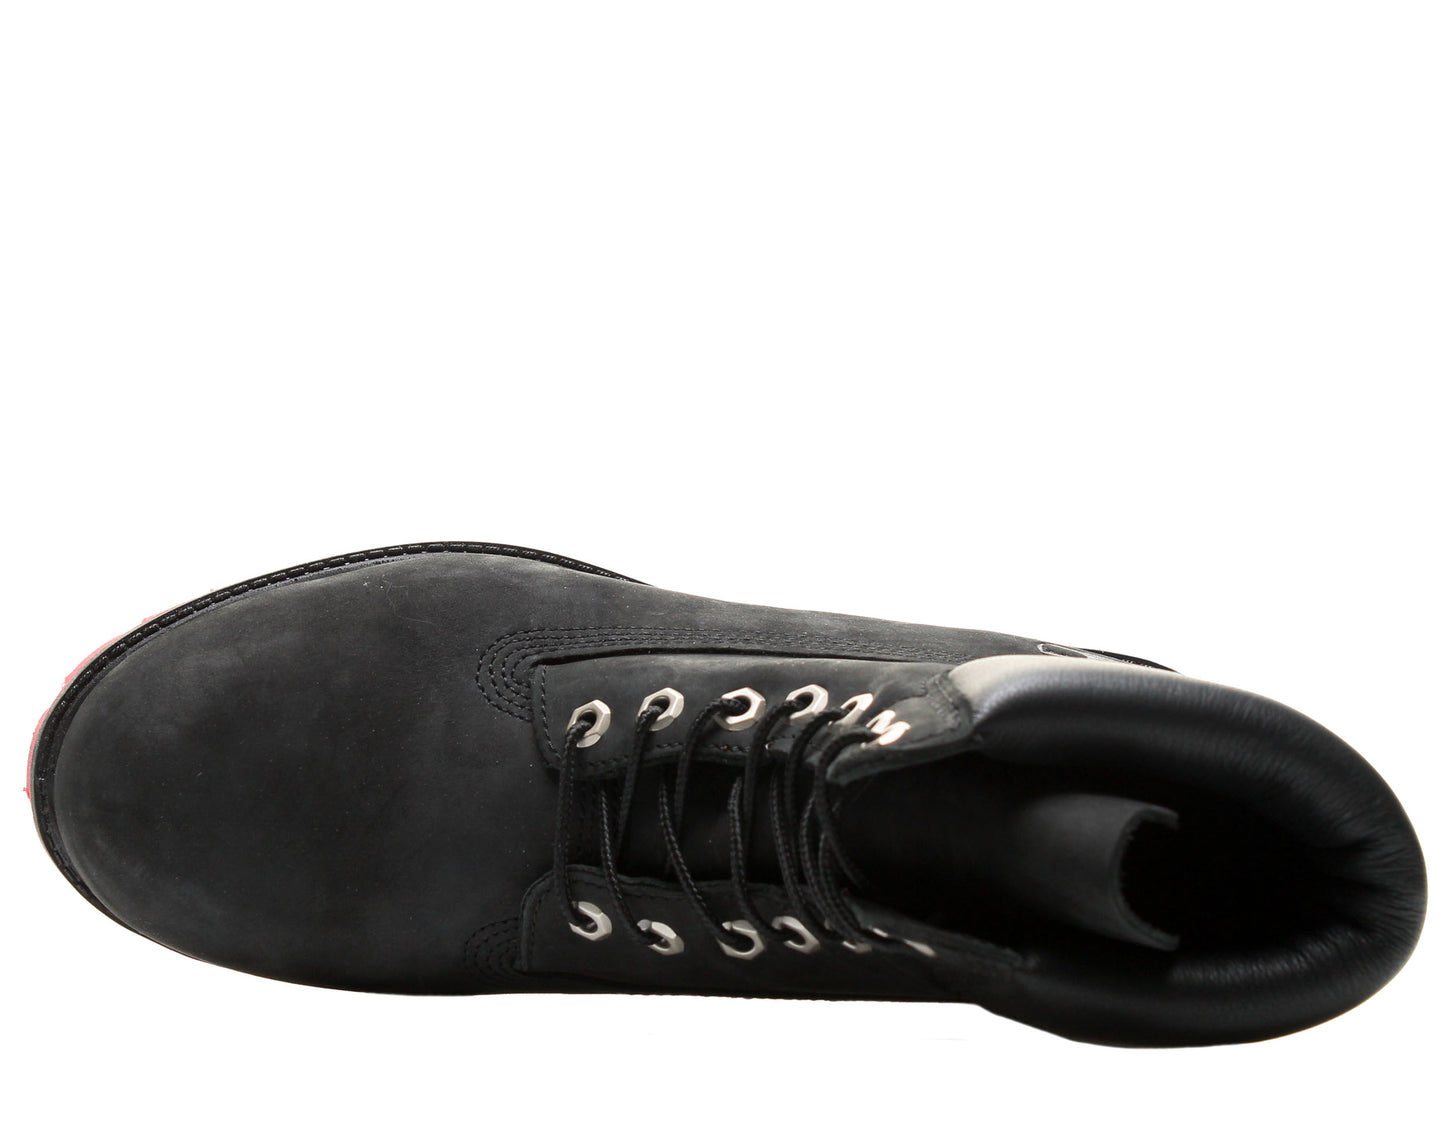 Timberland 6-Inch Premium Waterproof Men's Boots